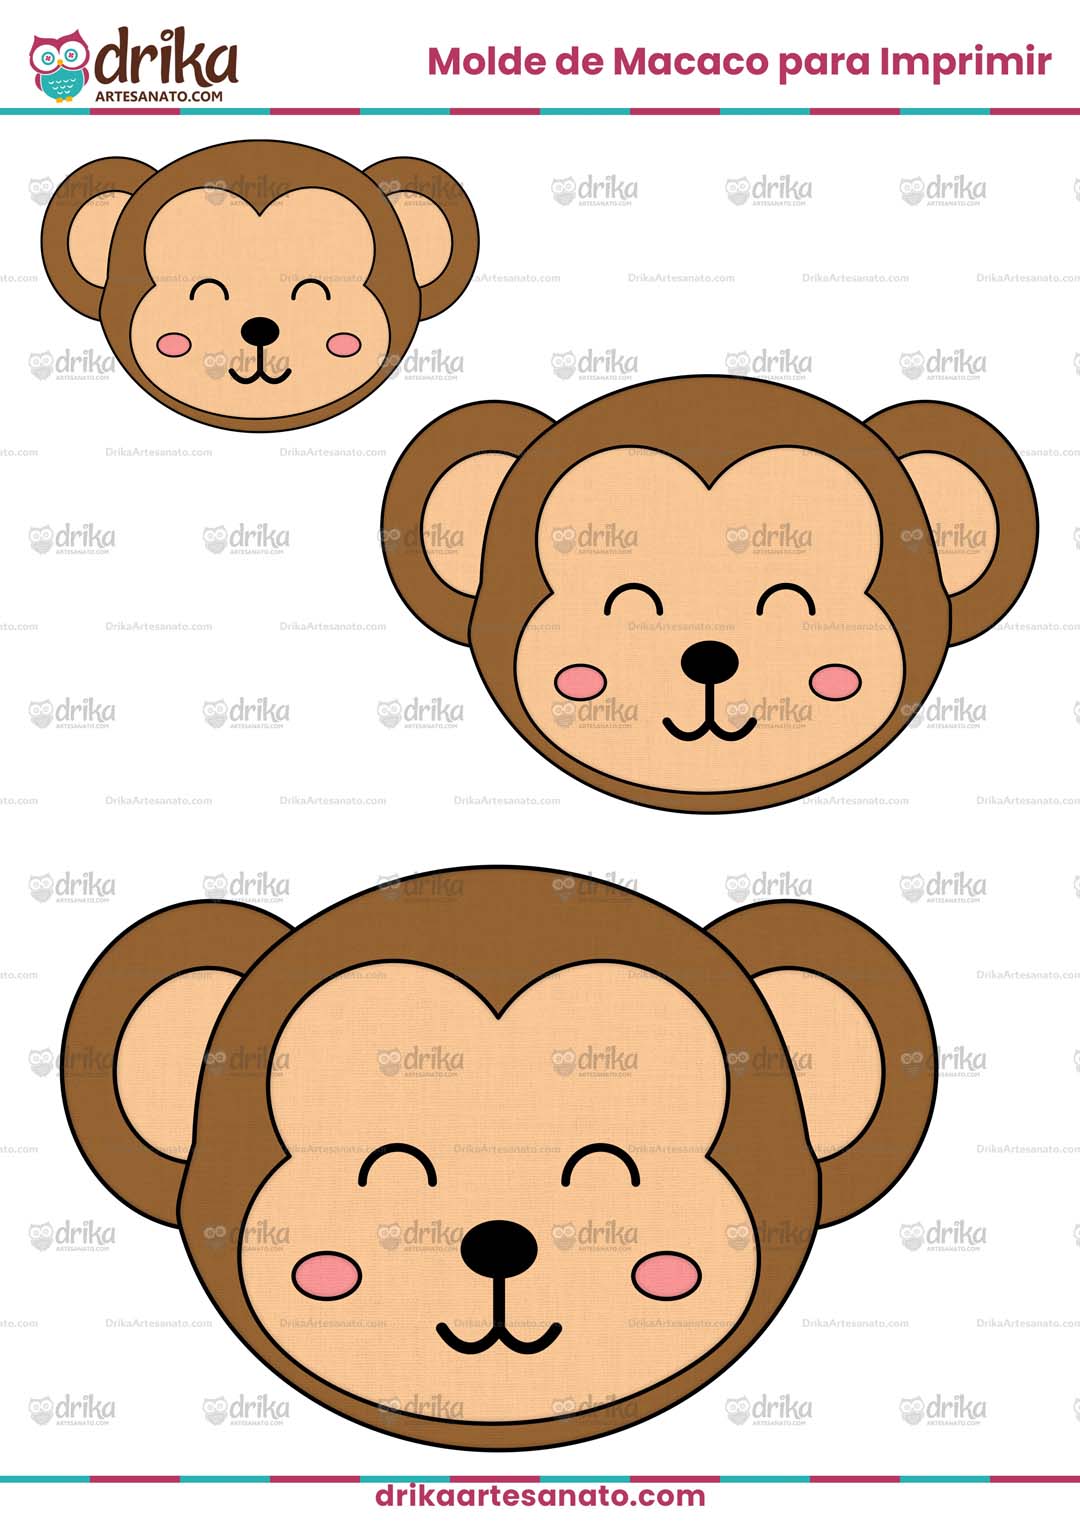 Molde de Macaco Sapeca para Imprimir Grátis em Vários Tamanhos